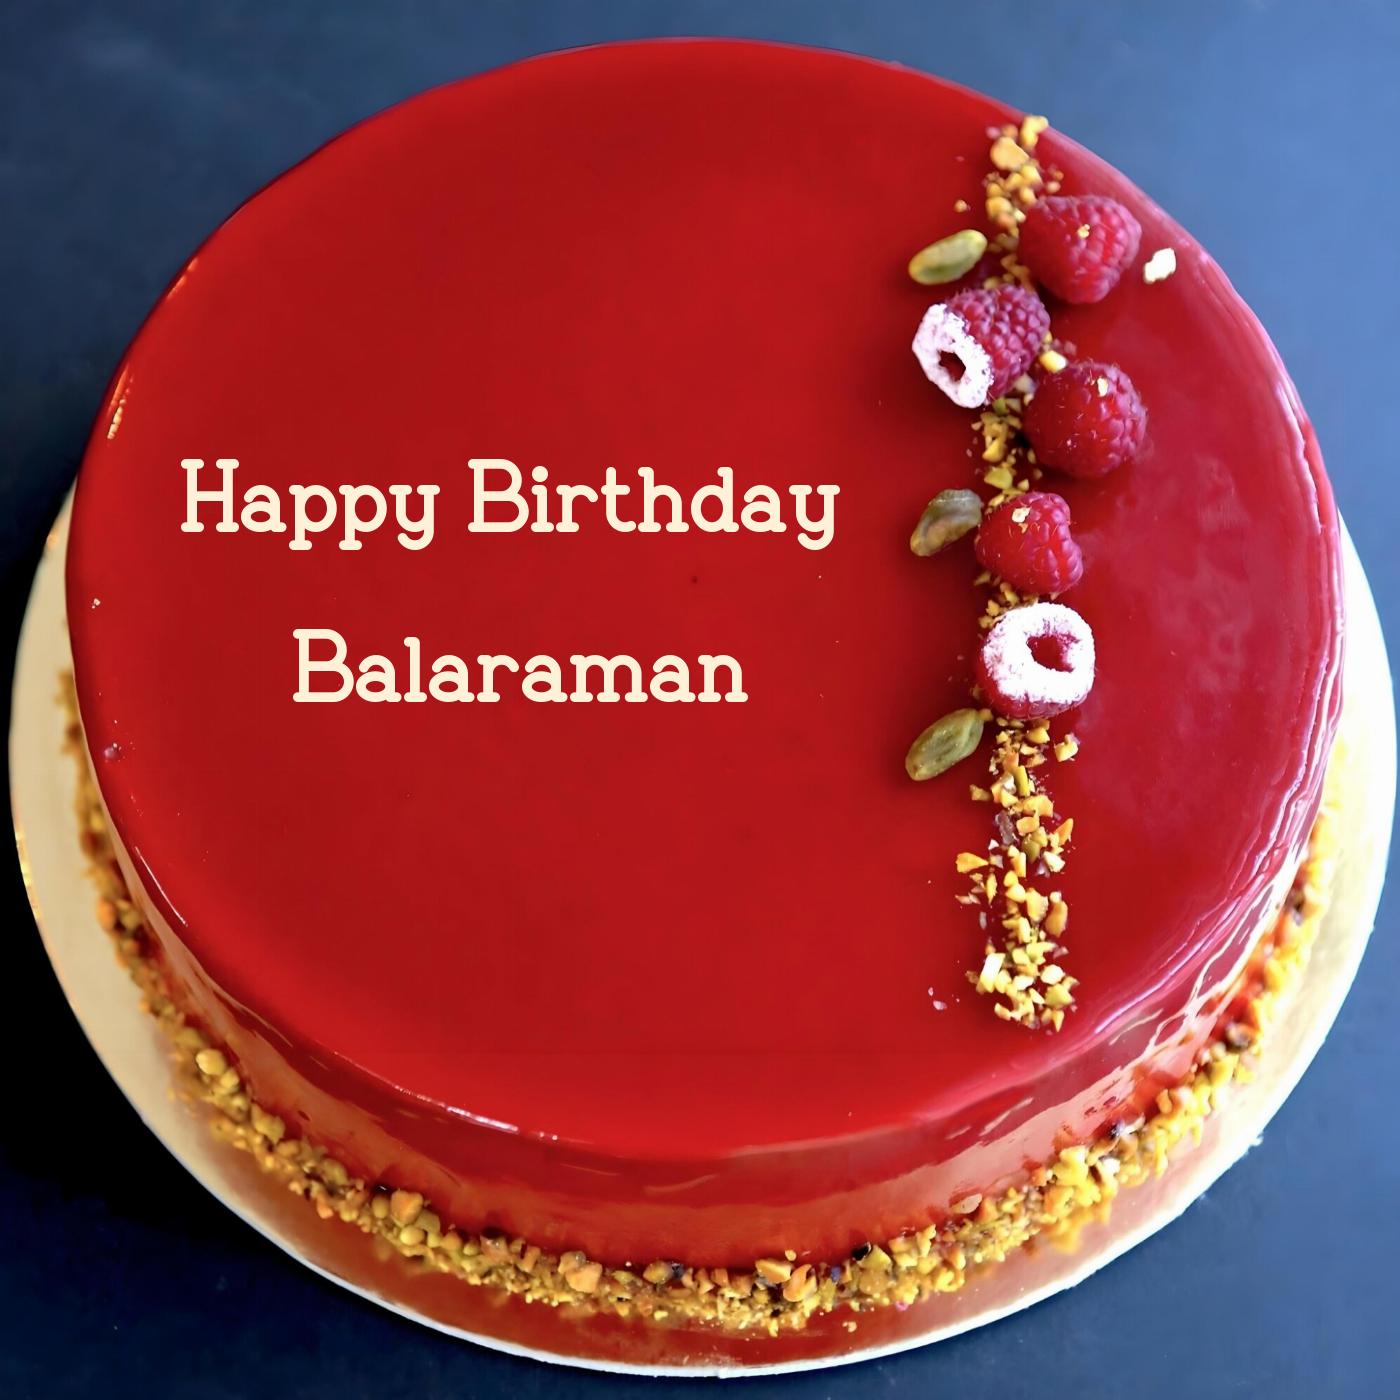 Happy Birthday Balaraman Red Raspberry Cake